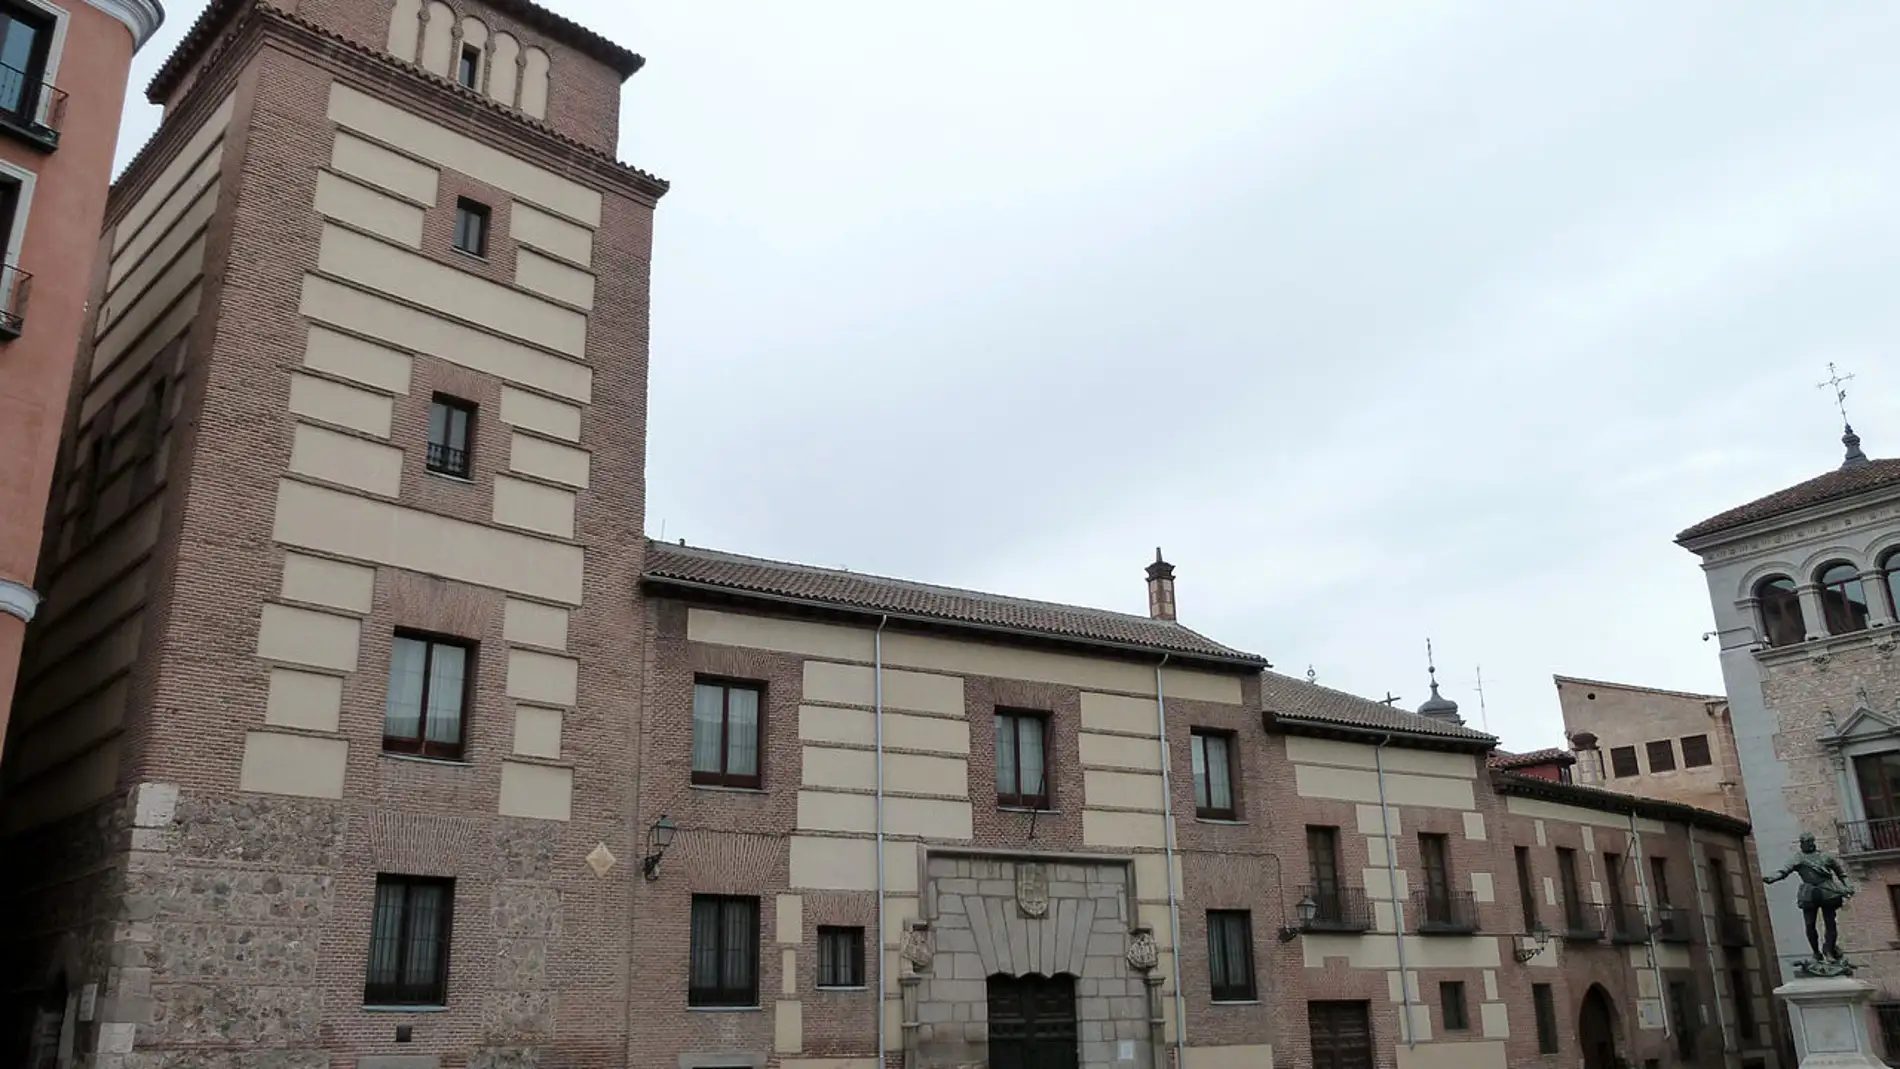 Casa y Torre de los Lujanes de Madrid: ¿sabías que aquí se encontró la “Baraja de Ayet”?